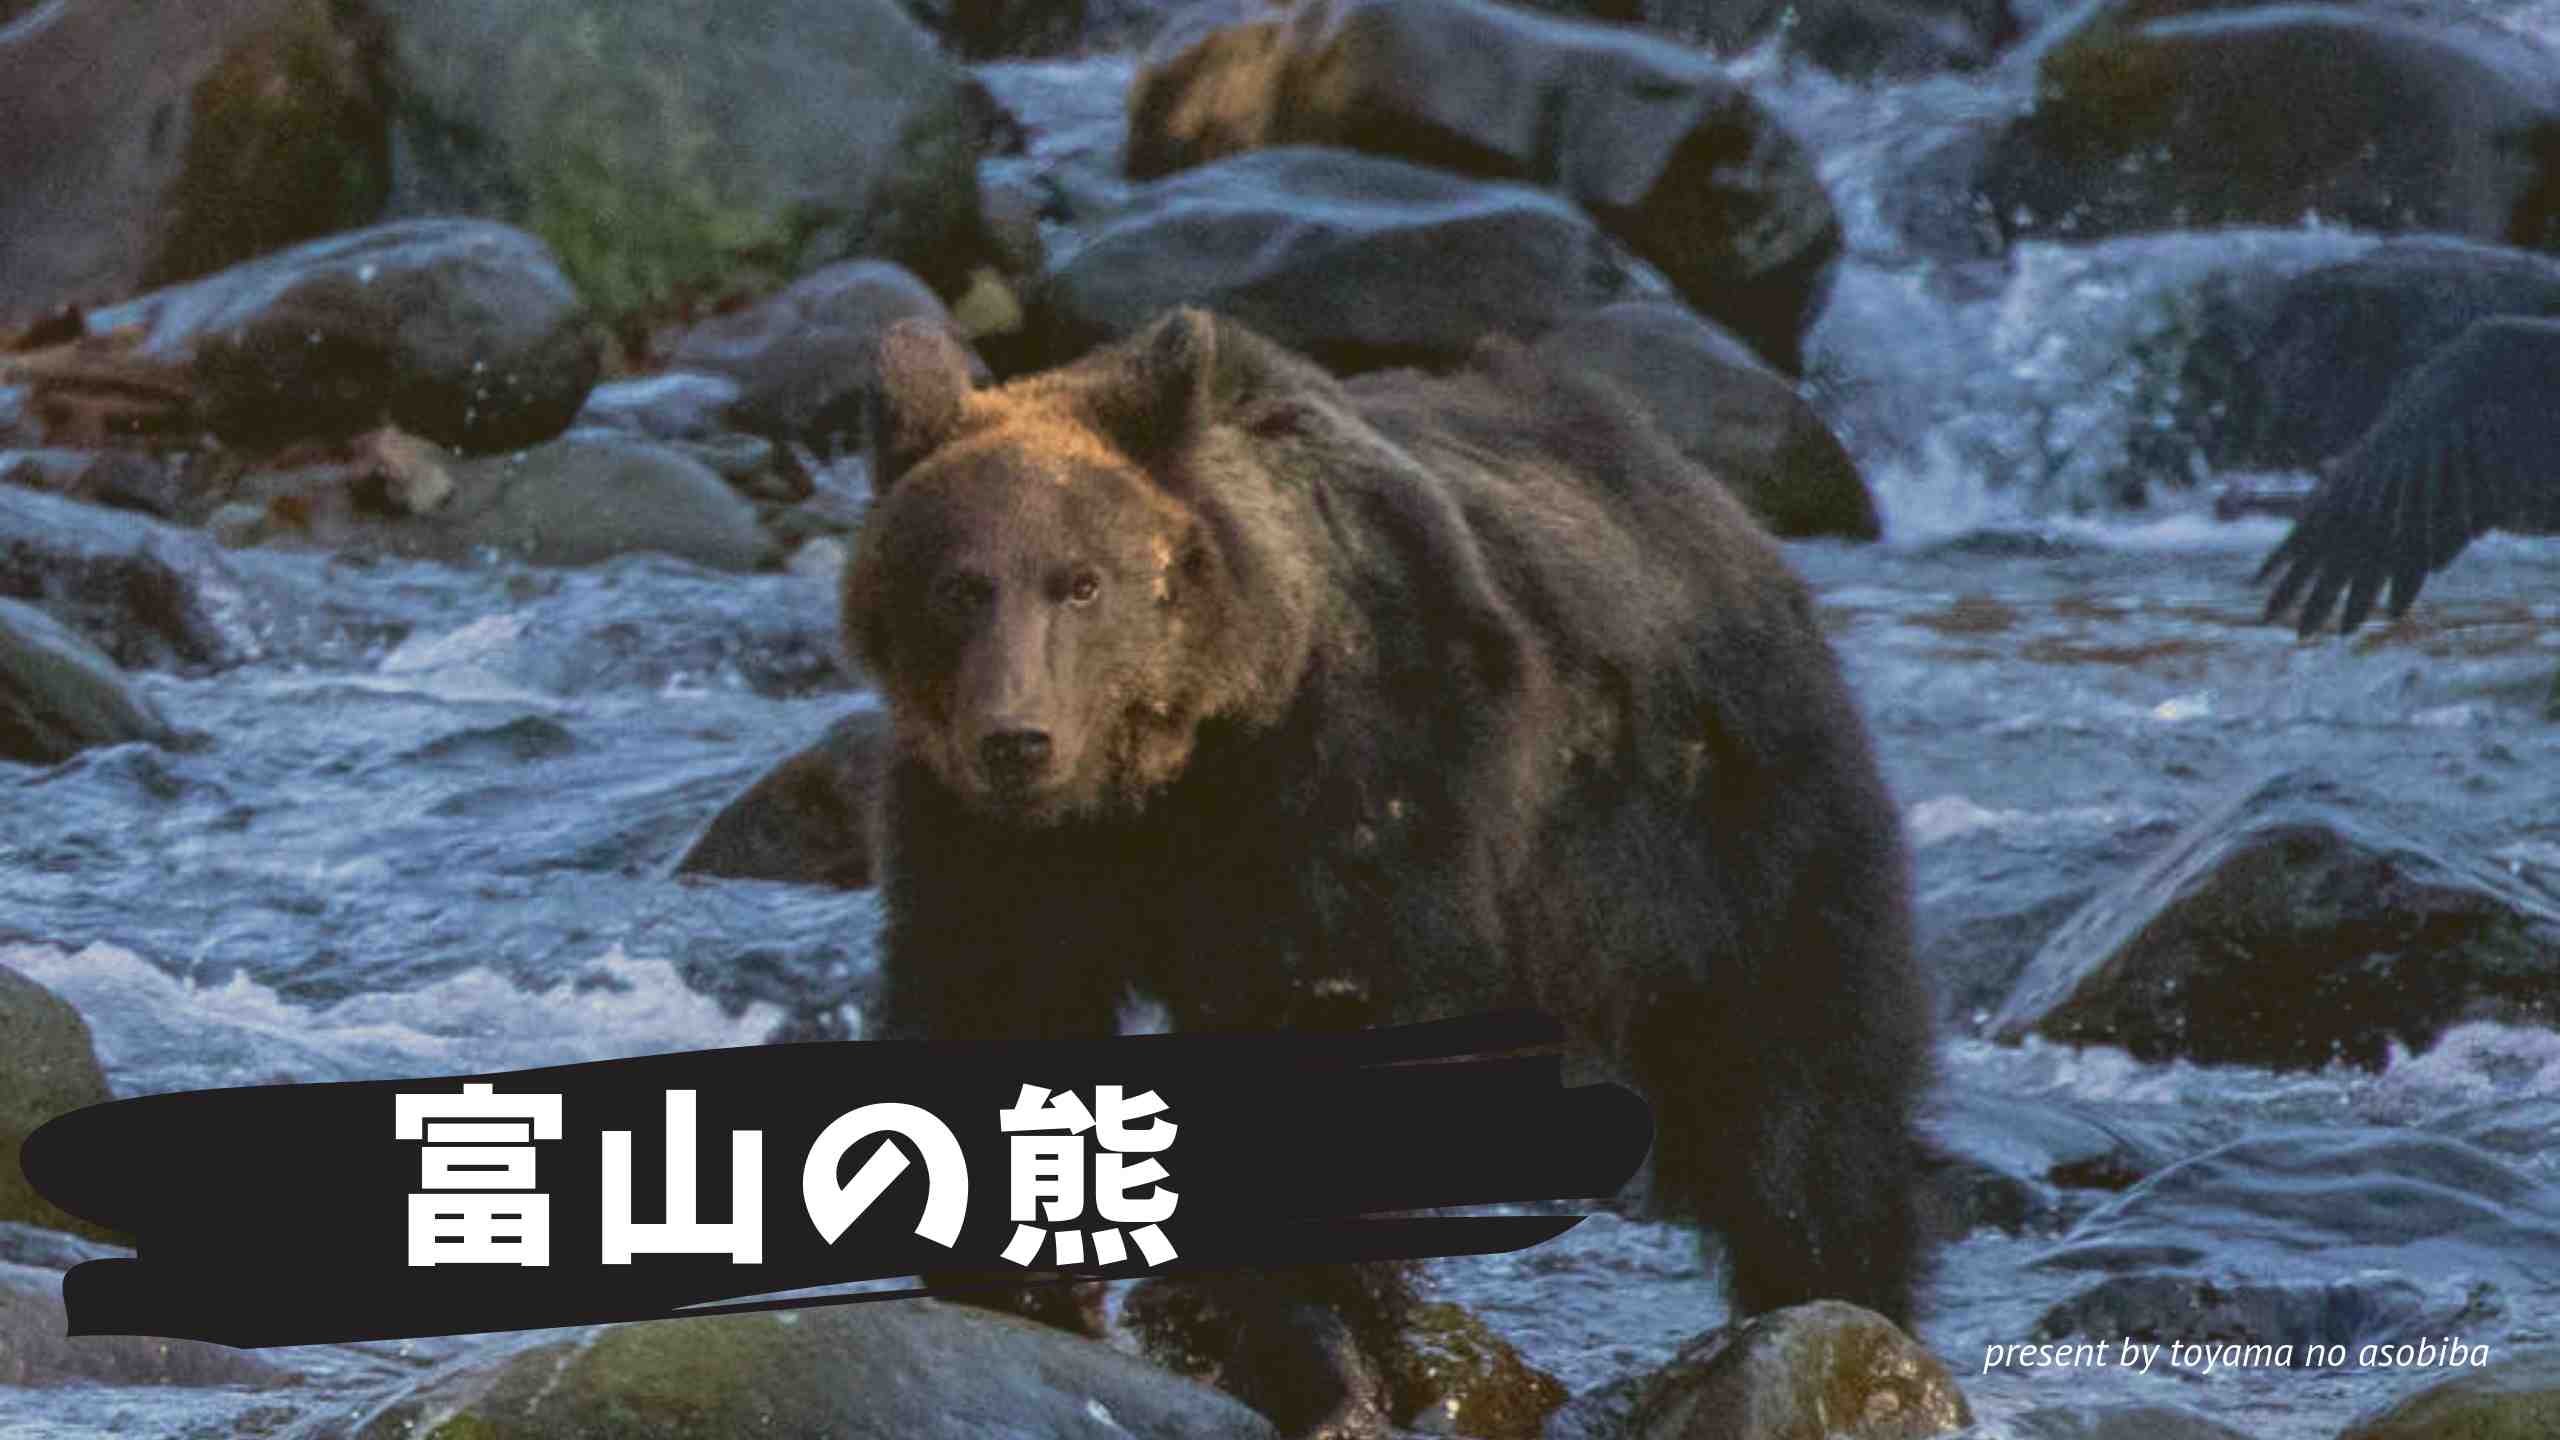 富山のクマ情報 種類や特徴 出没時間など被害に遭わない熊対策まとめ 富山の遊び場